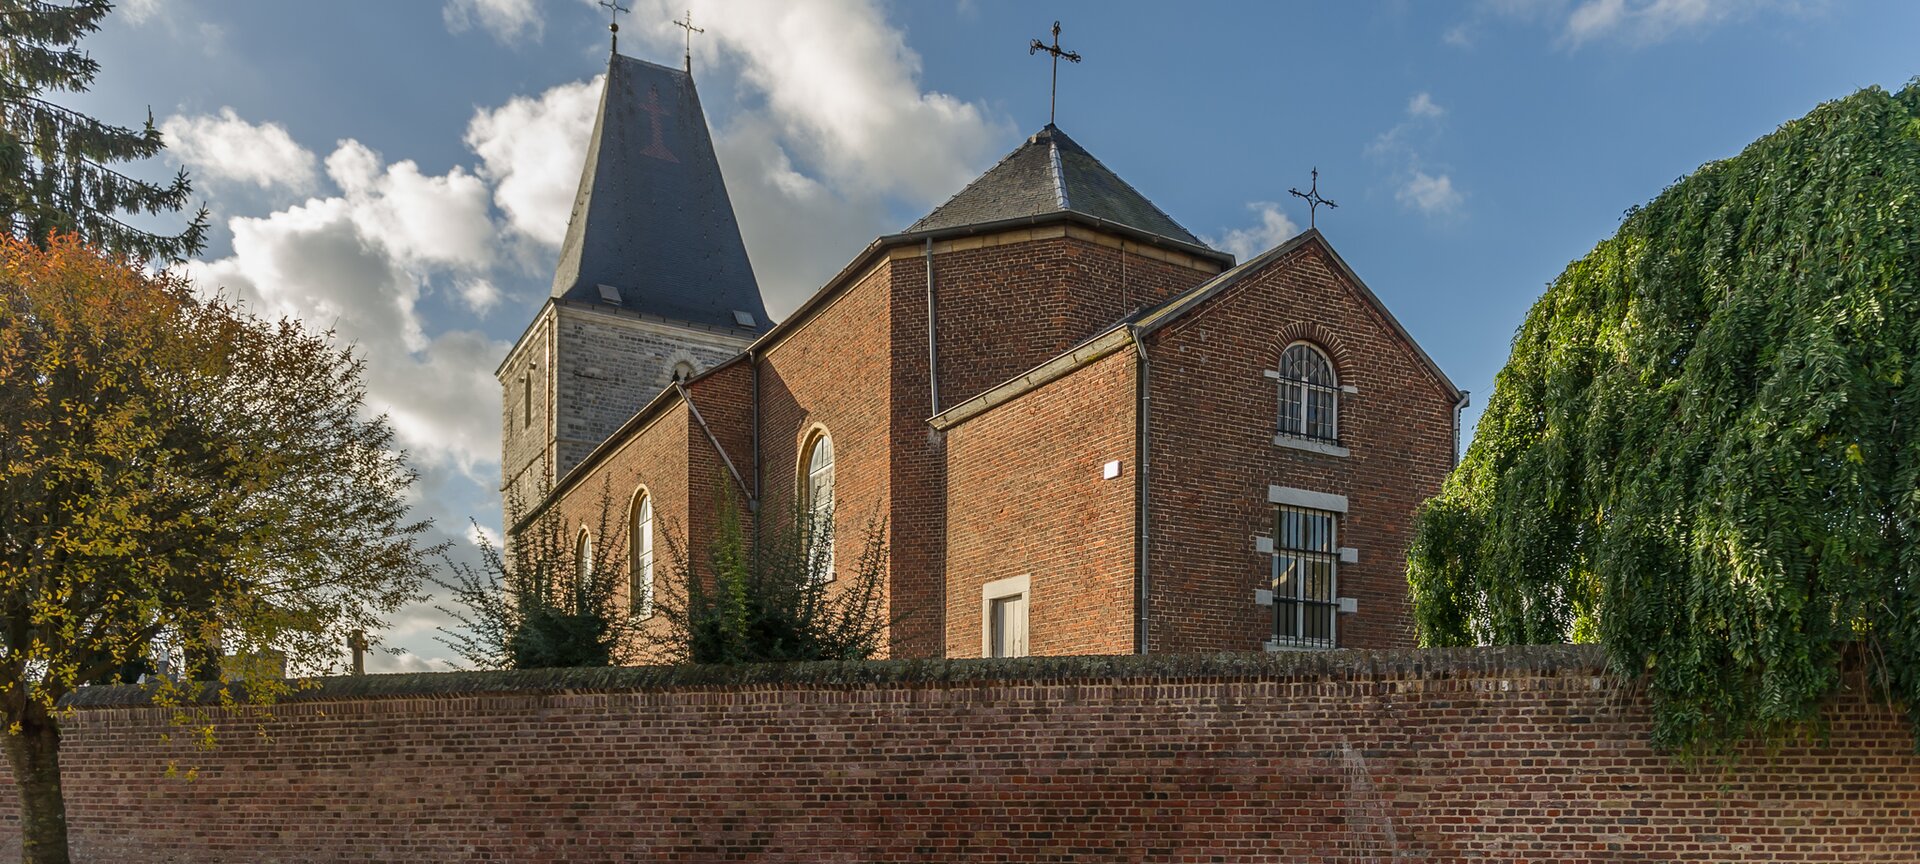 Kerk van Wilderen met bezoekerscentrum in toren - Kerk van Wilderen